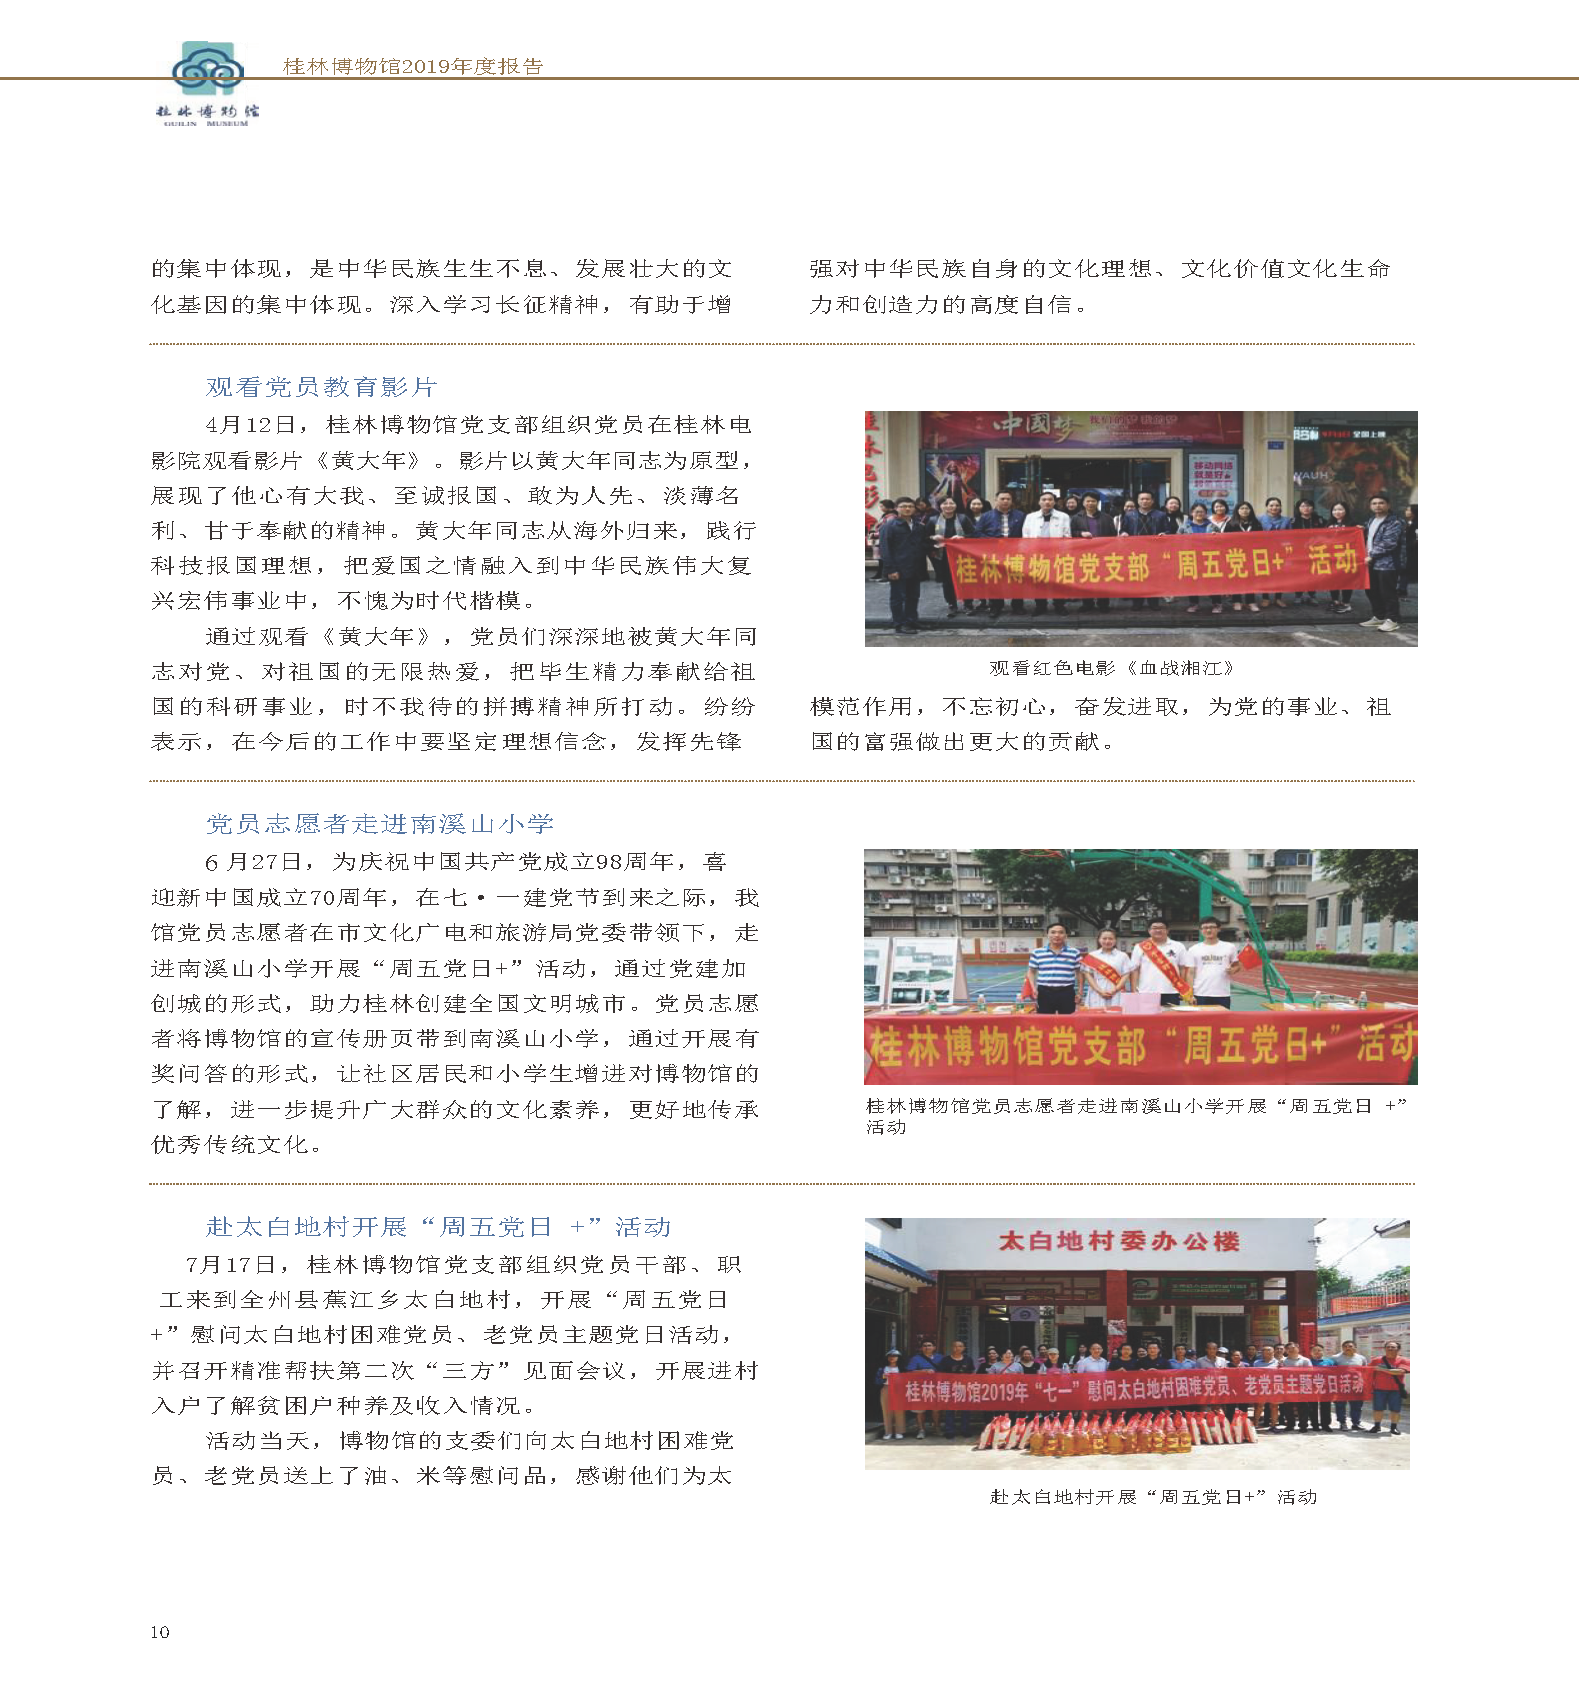 桂林博物馆2019年度报告.pdf_页面_012.png